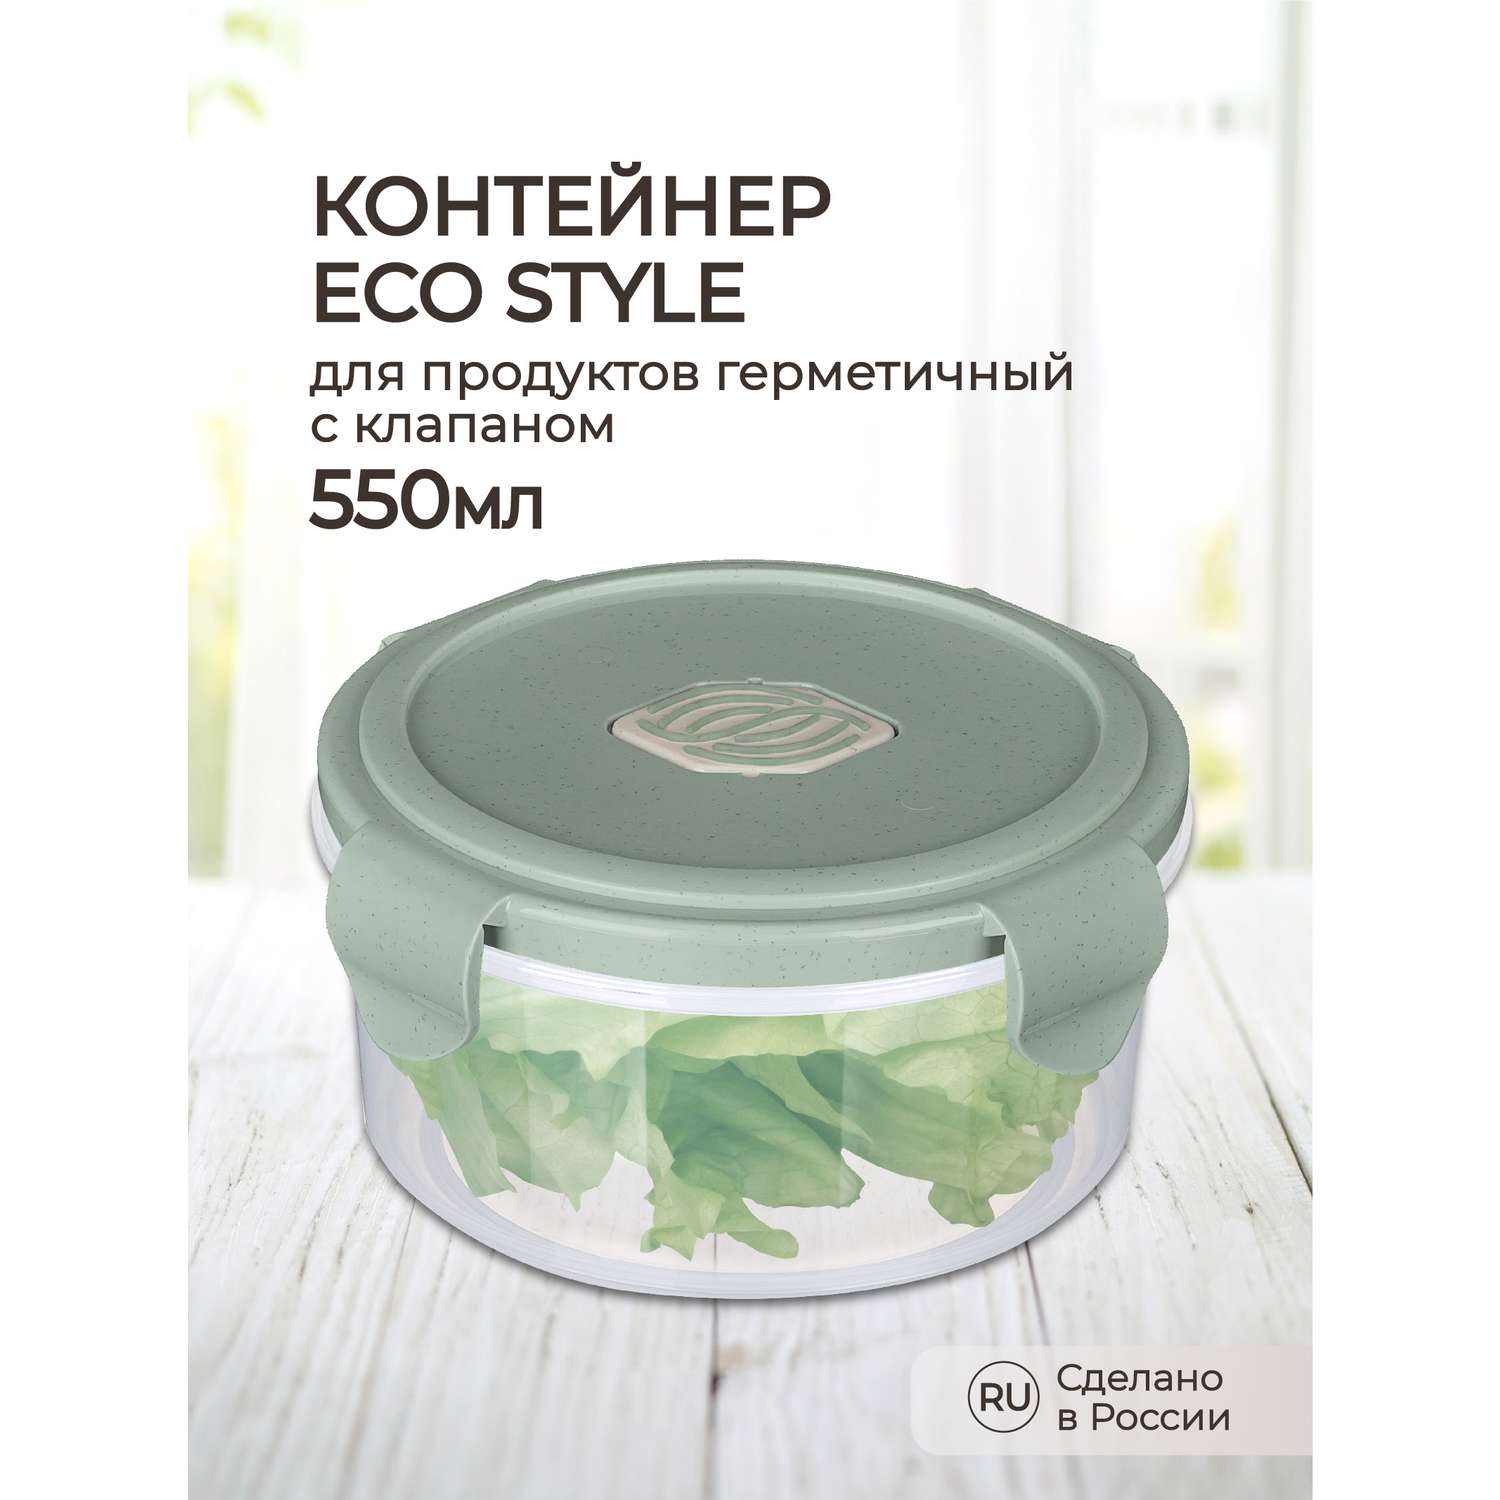 Контейнер Phibo для продуктов герметичный с клапаном Eco Style круглый 0.55л зеленый флэк - фото 1